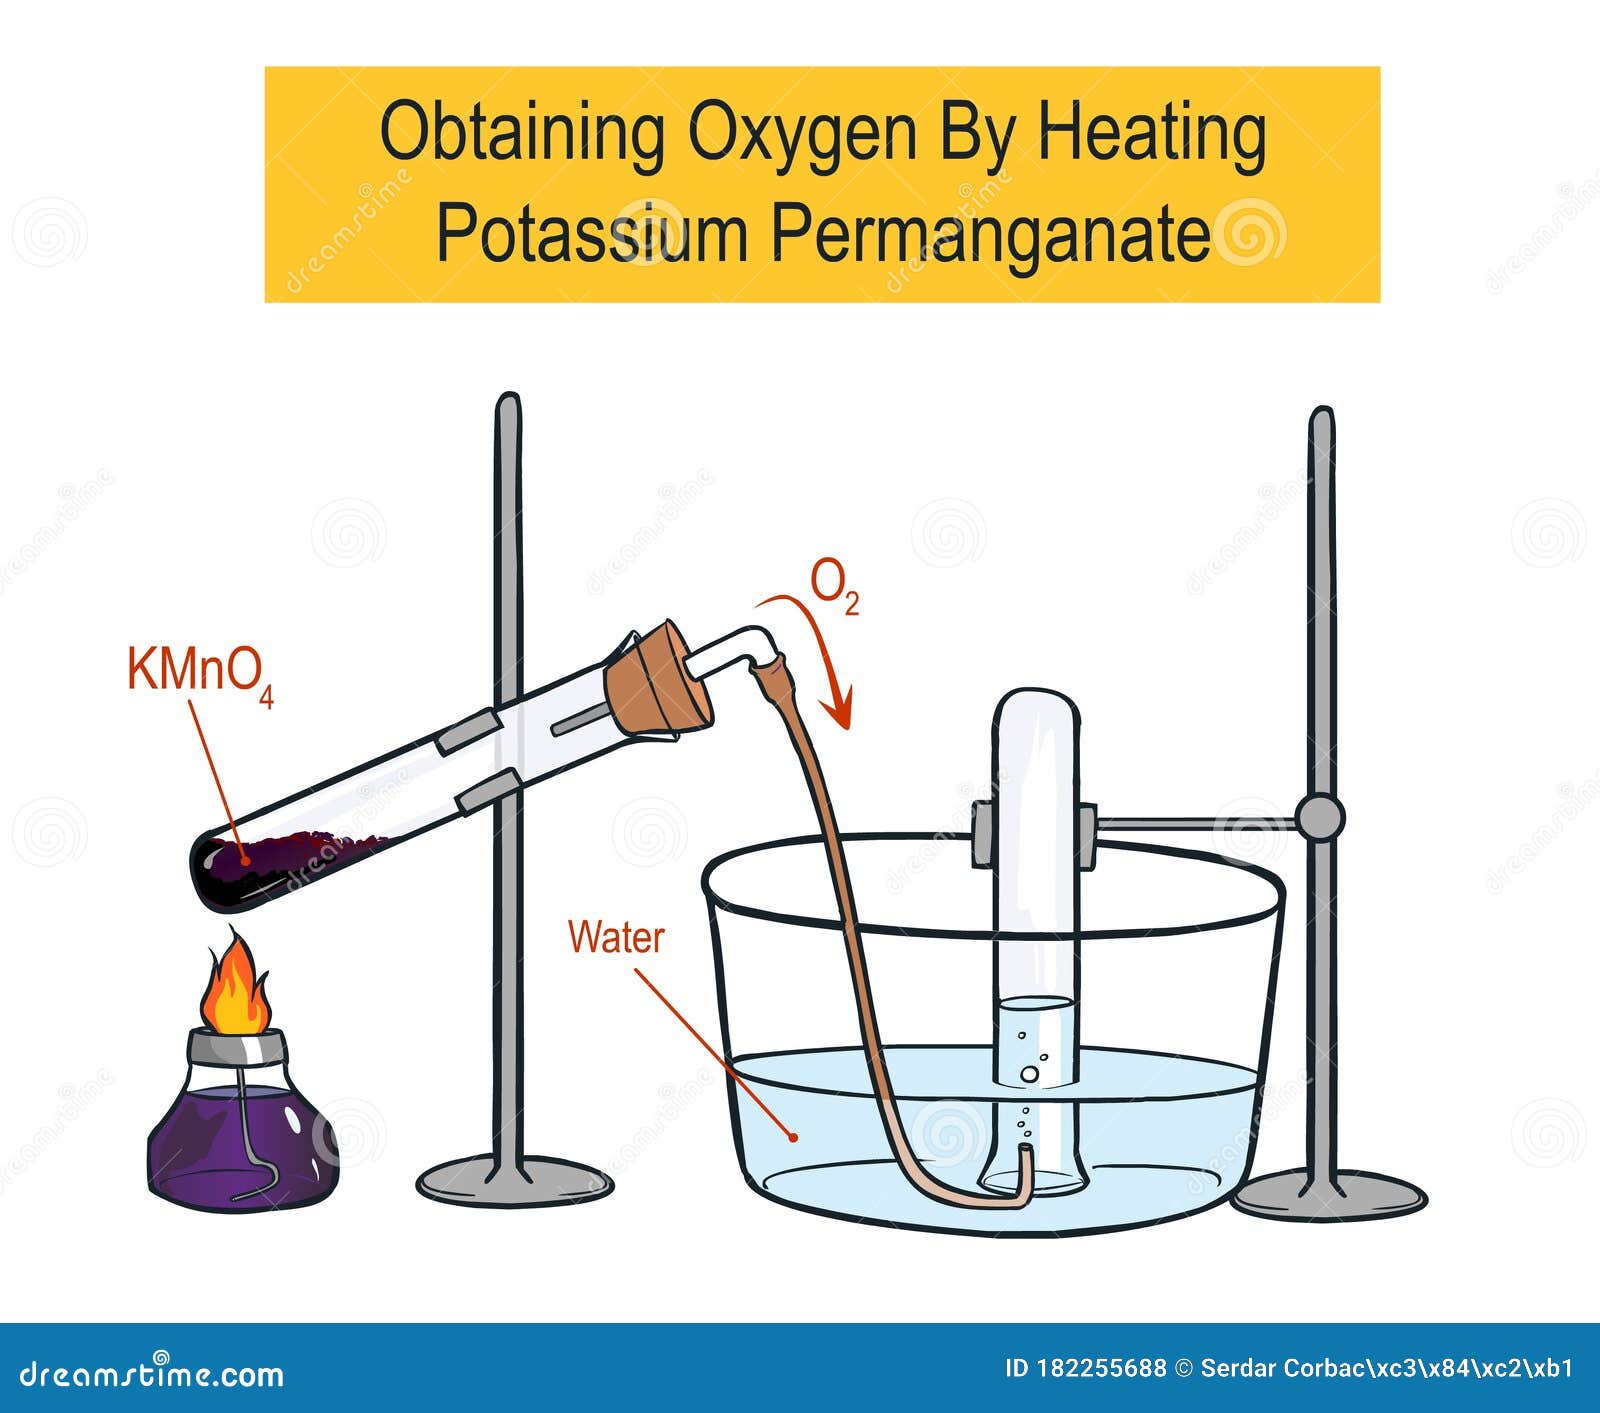 Перманганат калия и кислород реакция. Получение кислорода. Прибор для получения кислорода химия. Прибор для получения кислорода в лаборатории. Получение кислорода в лаборатории.